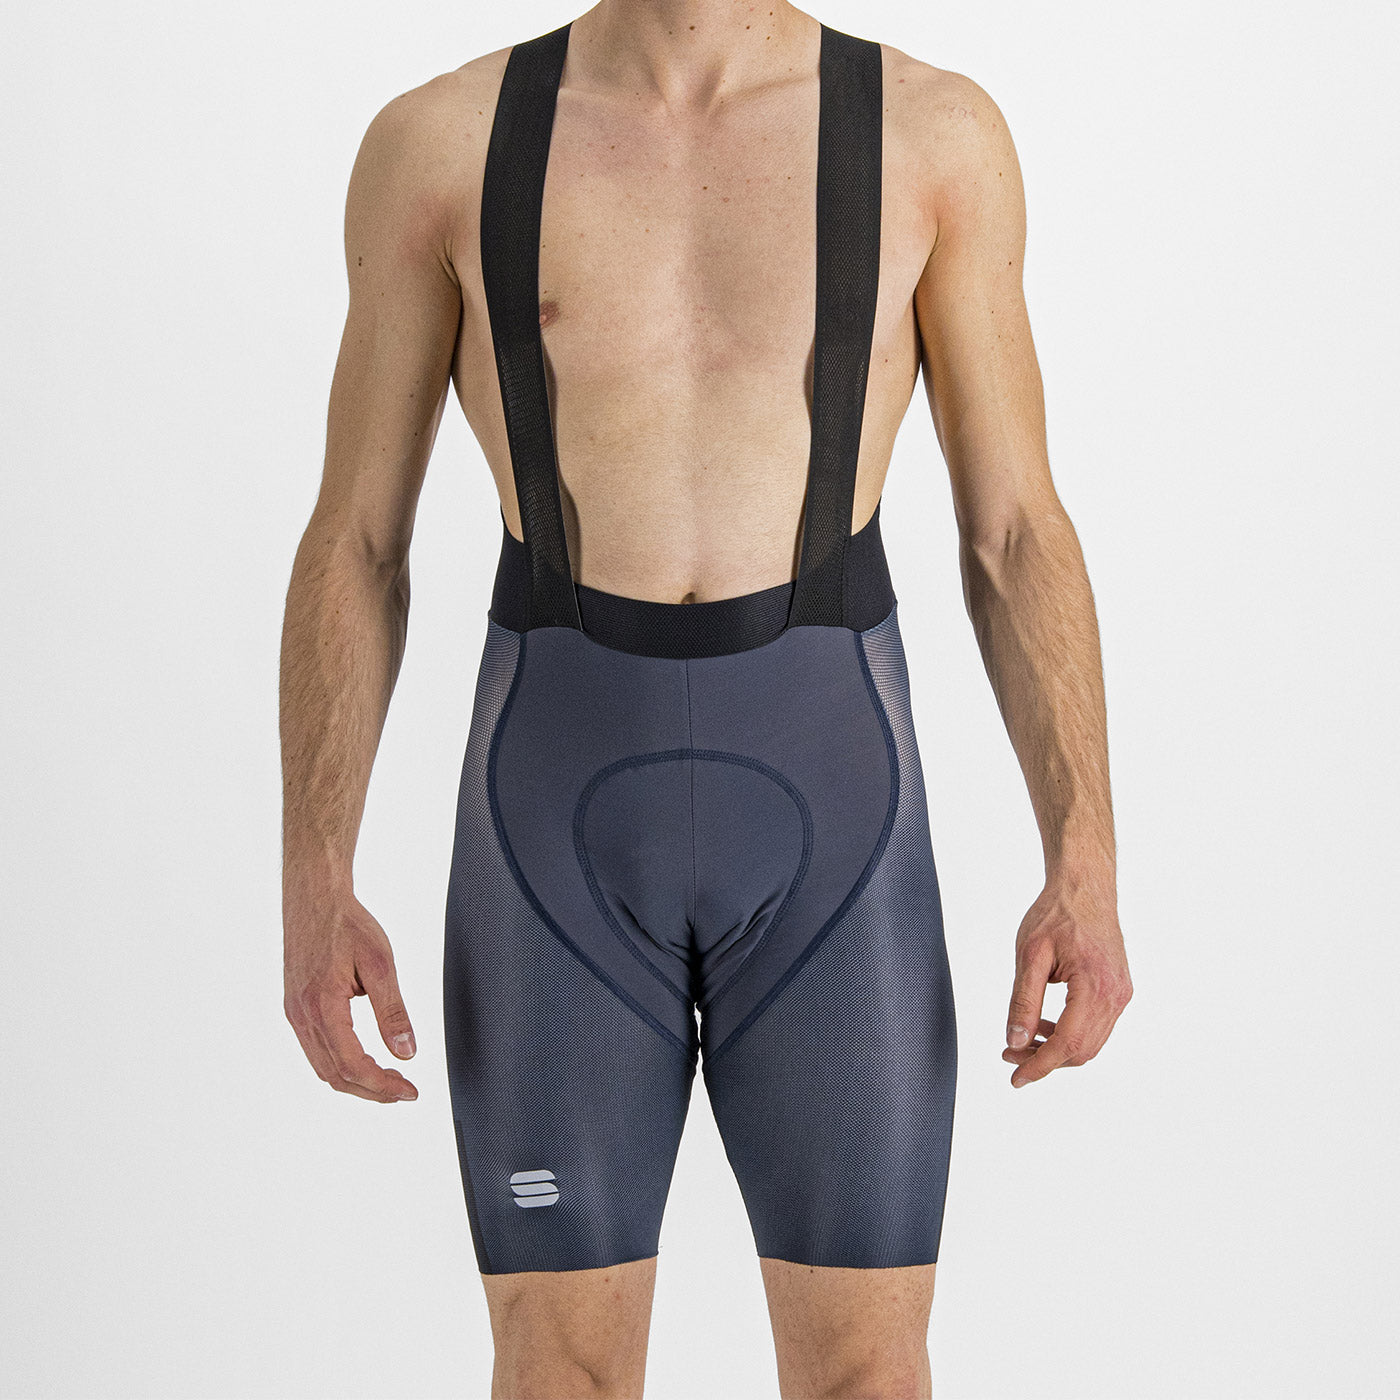 Sportful Bodyfit Pro Air bib shorts - Blue black – All4cycling